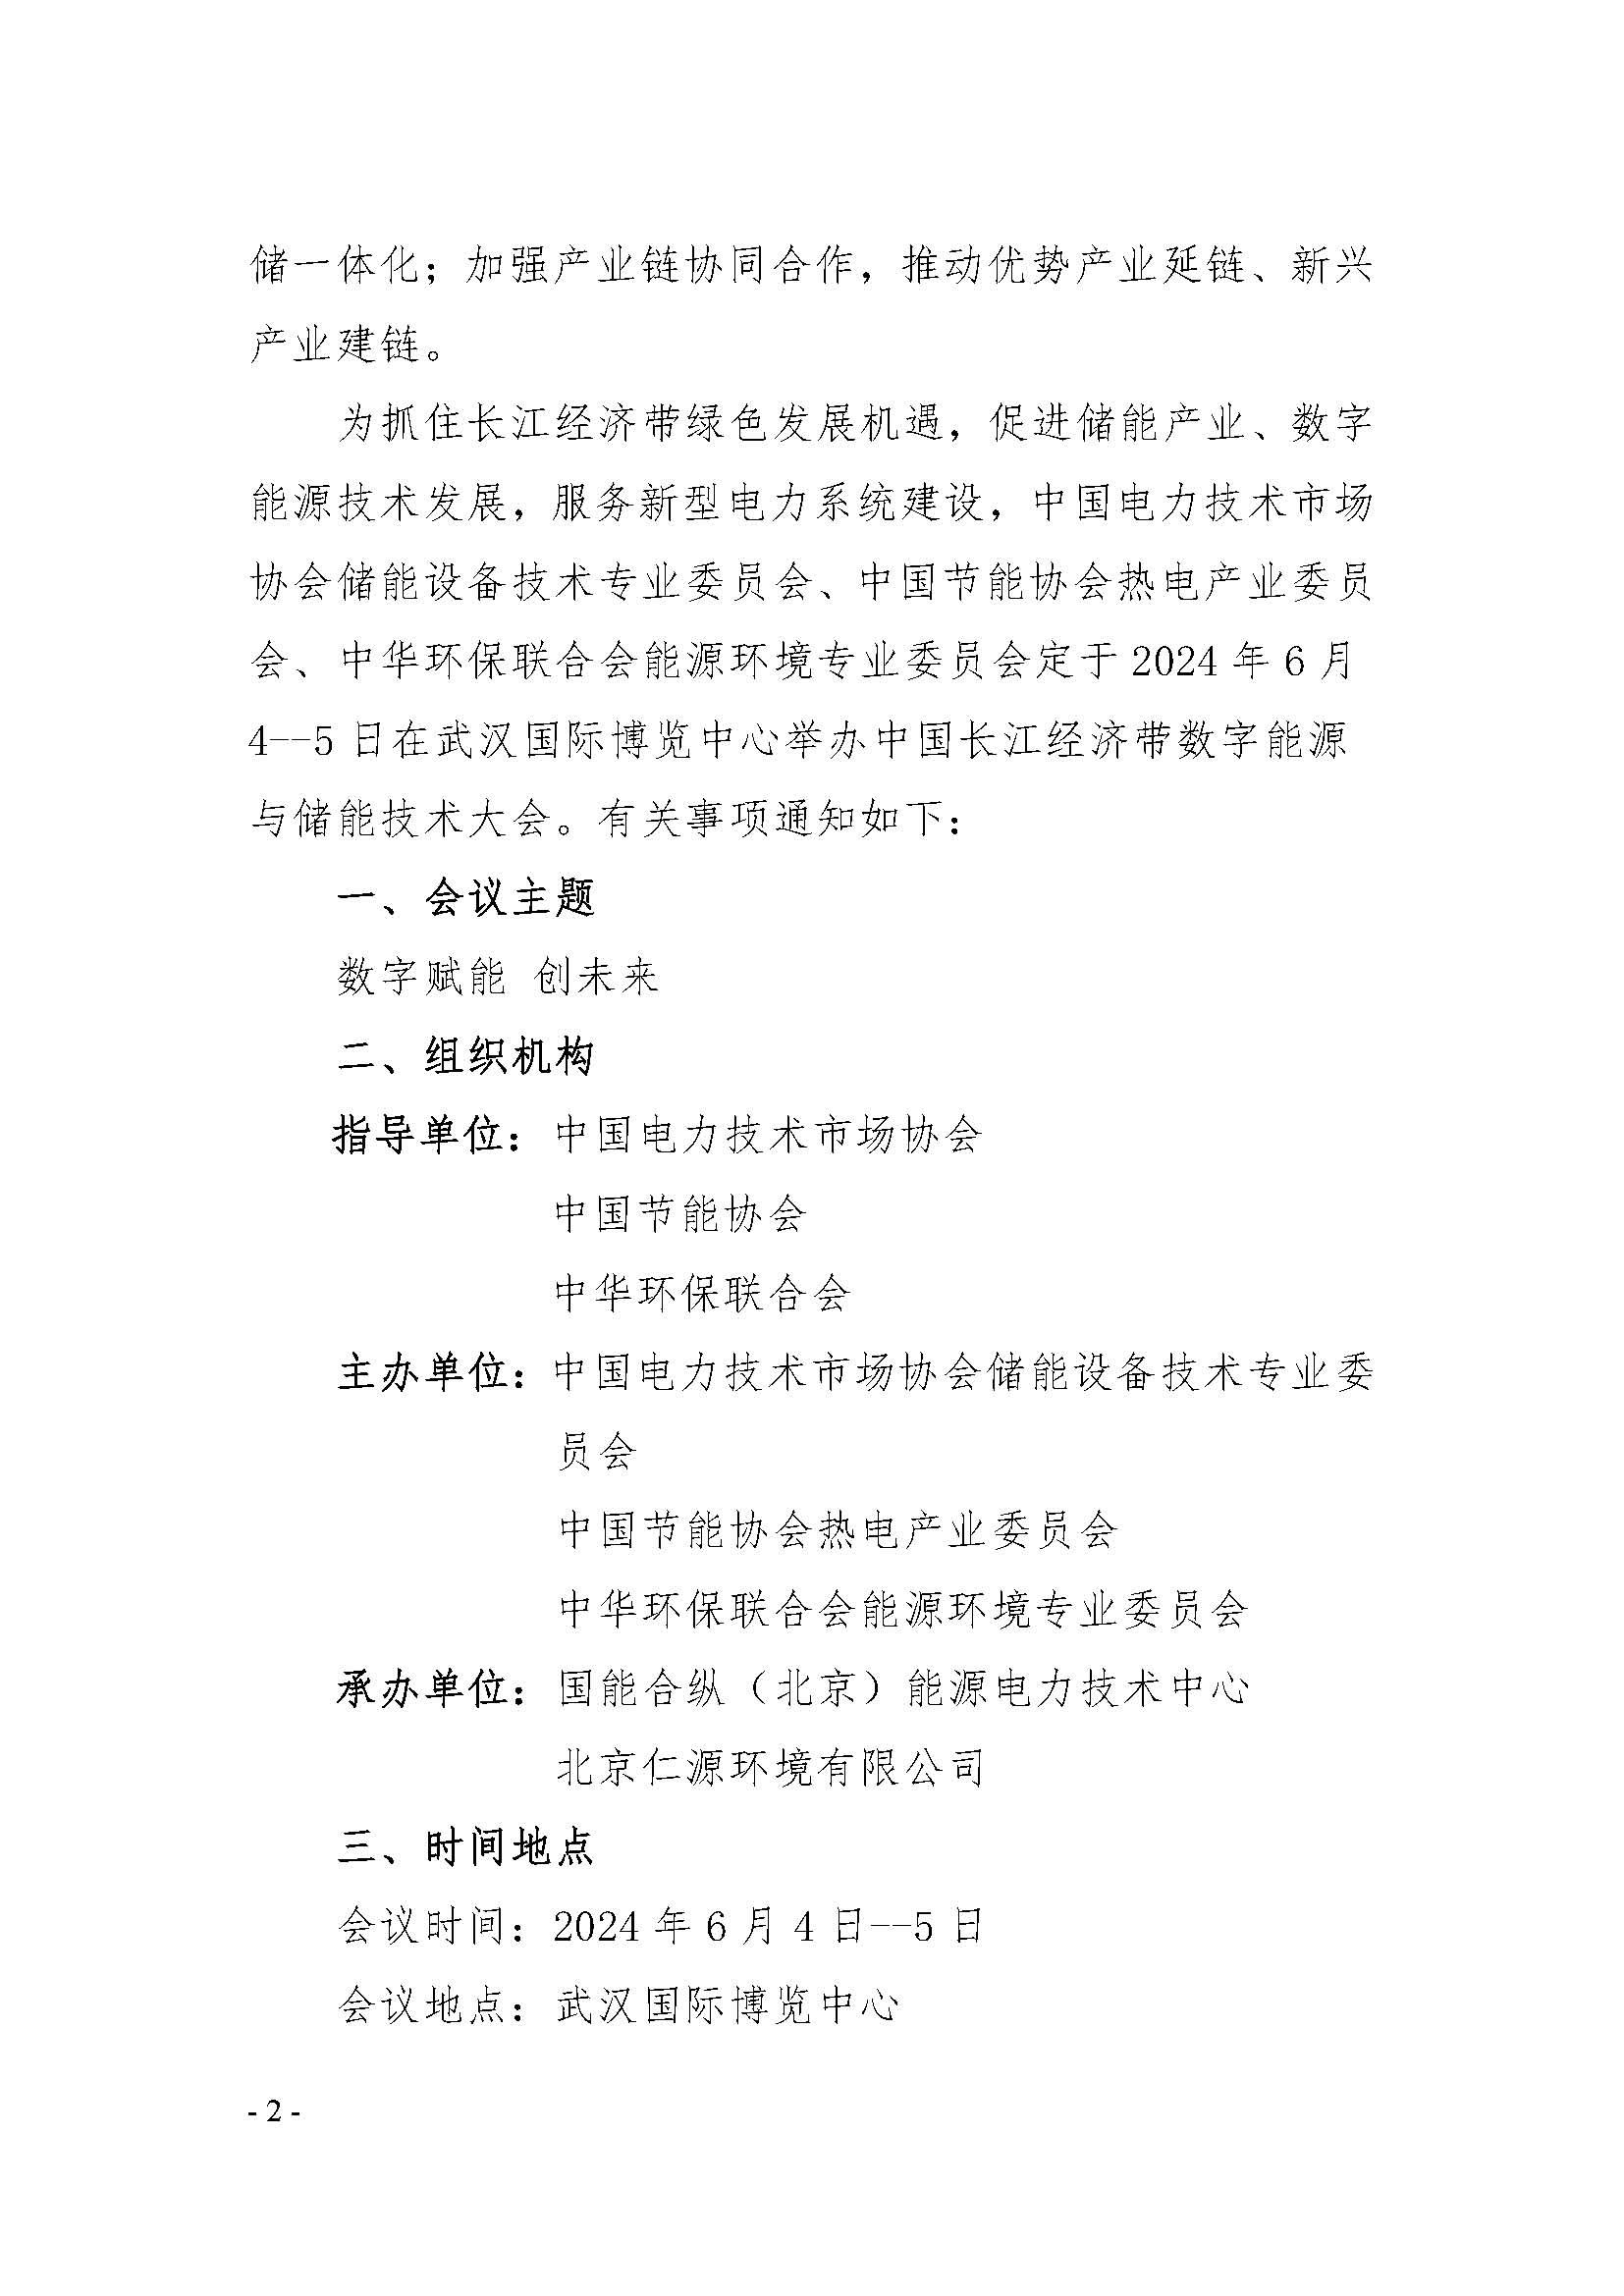 (大会)关于举办“中国长江经济带数字能源与储能技术大会”的通知(1)_页面_2.jpg